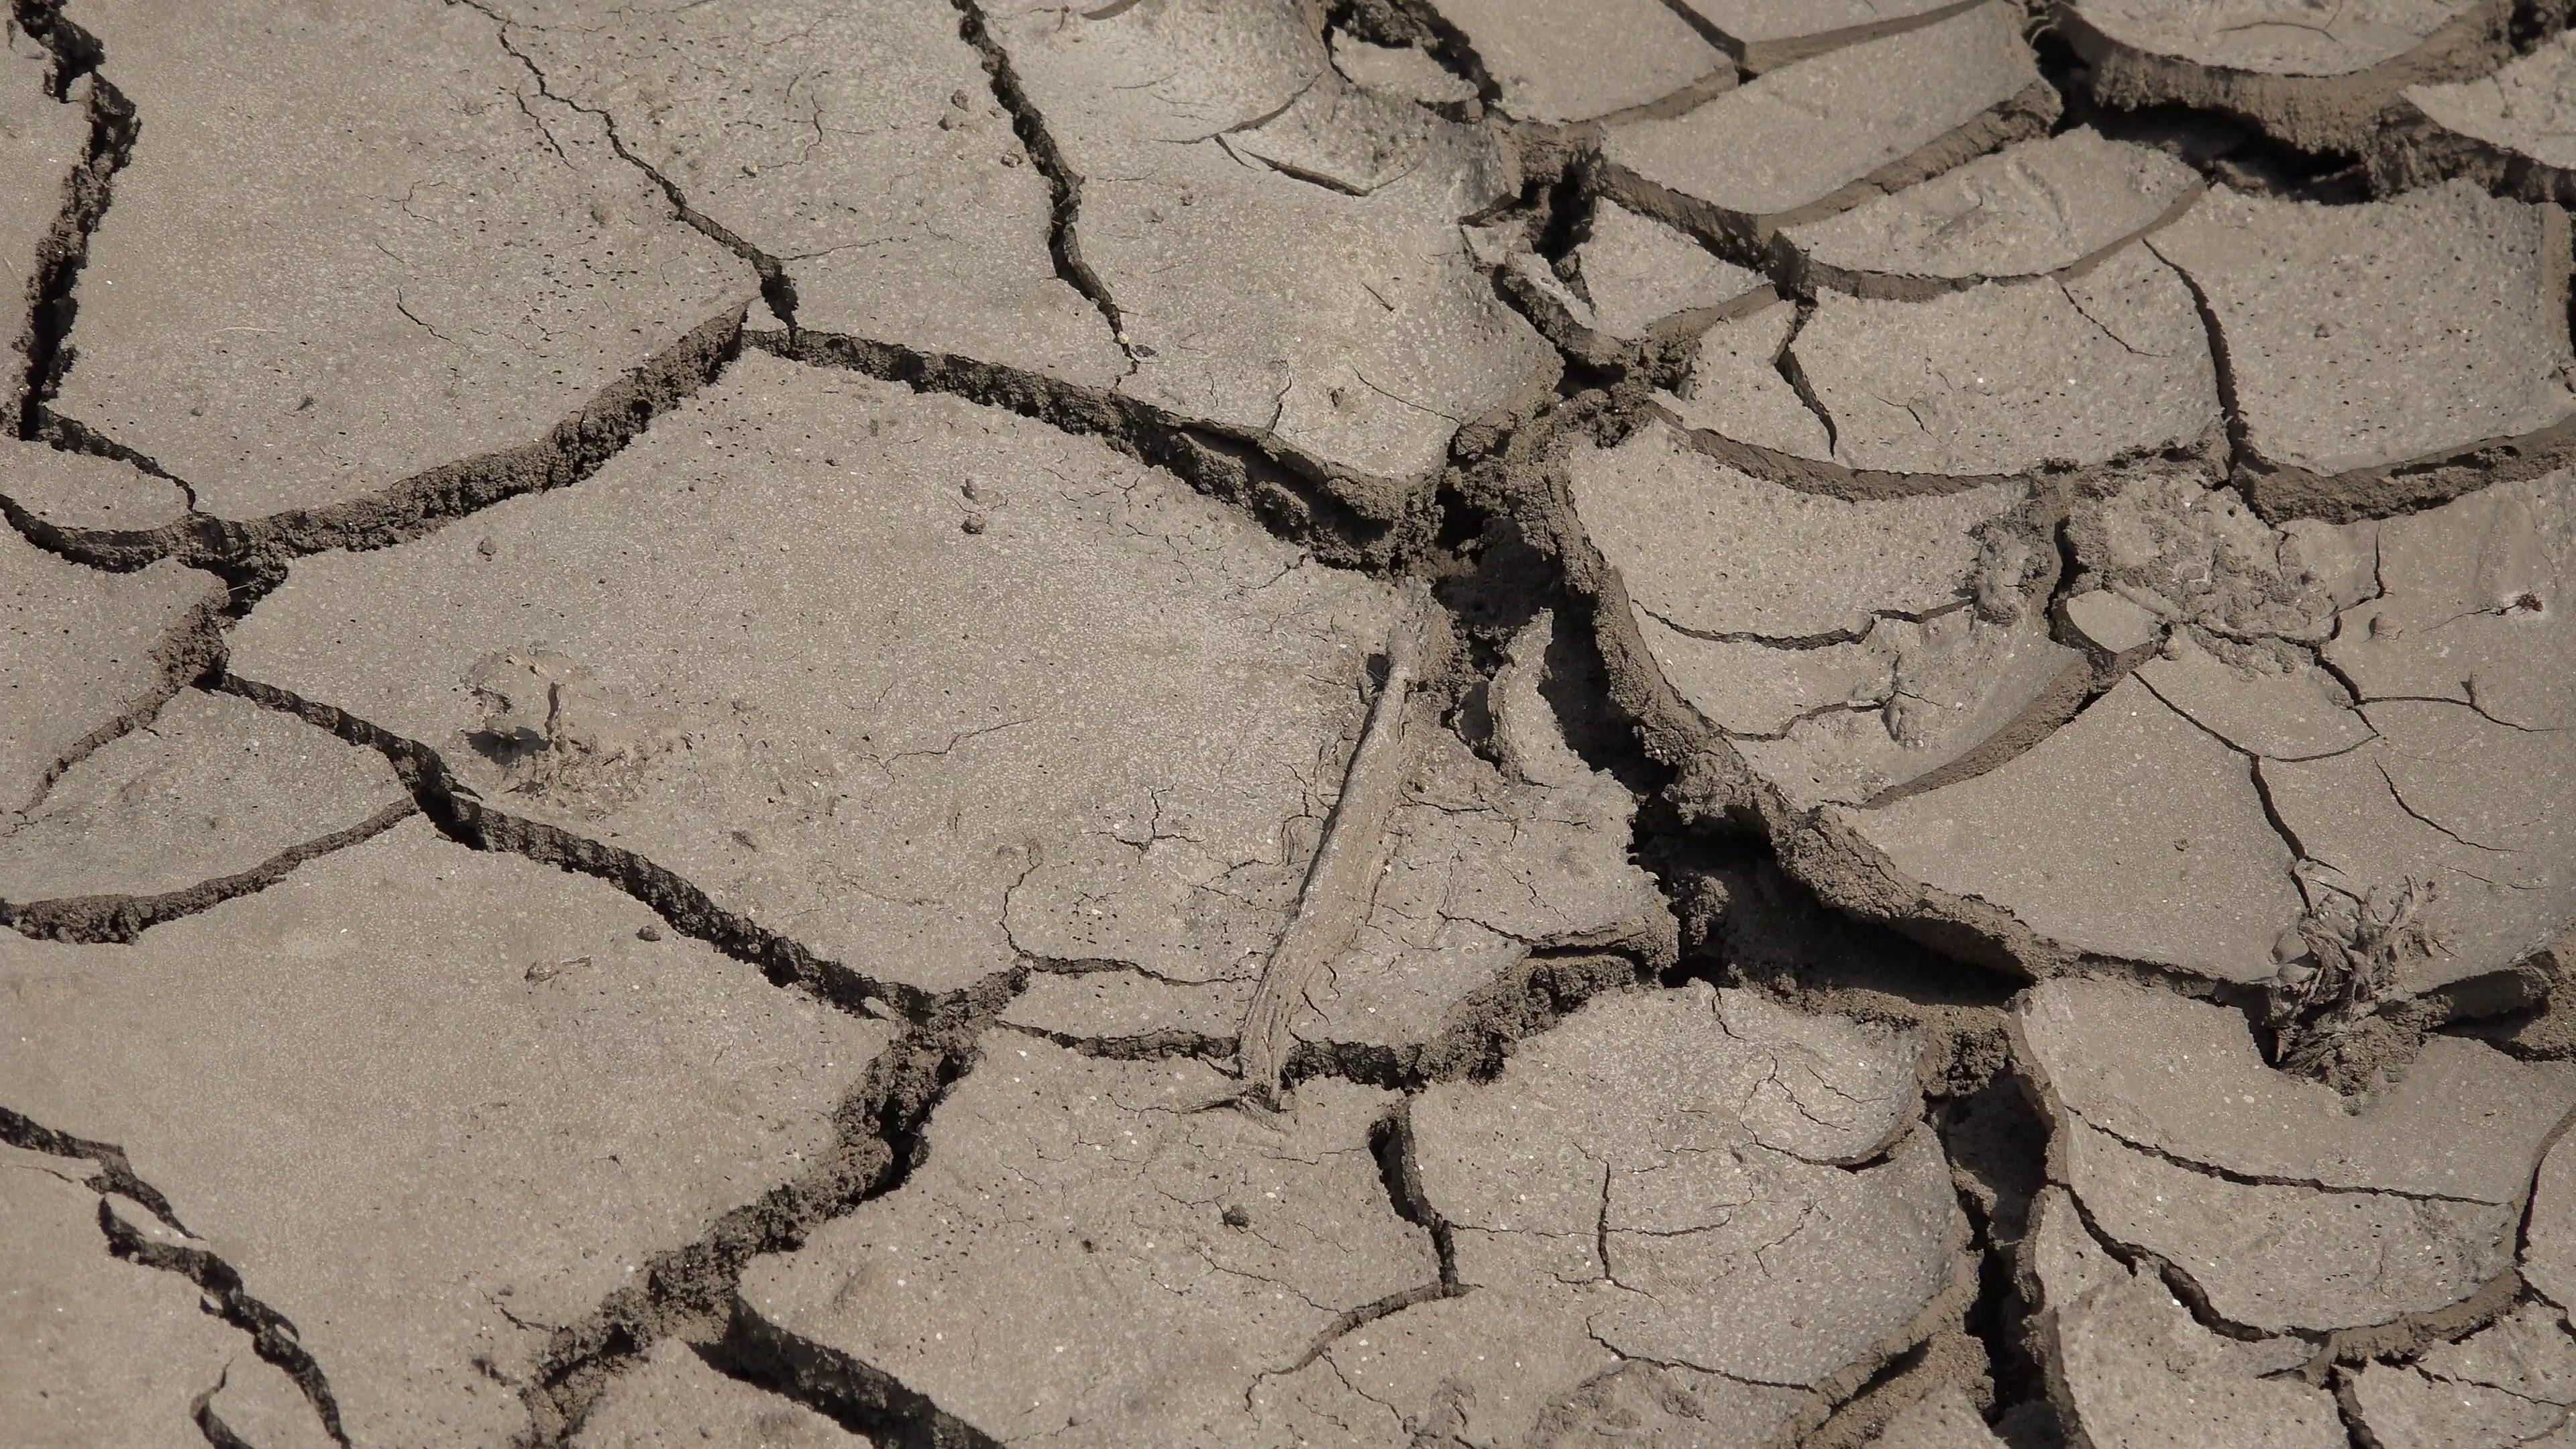 ULTRA HD 4K Closeup detail dry ground mud barren terrain concept ...